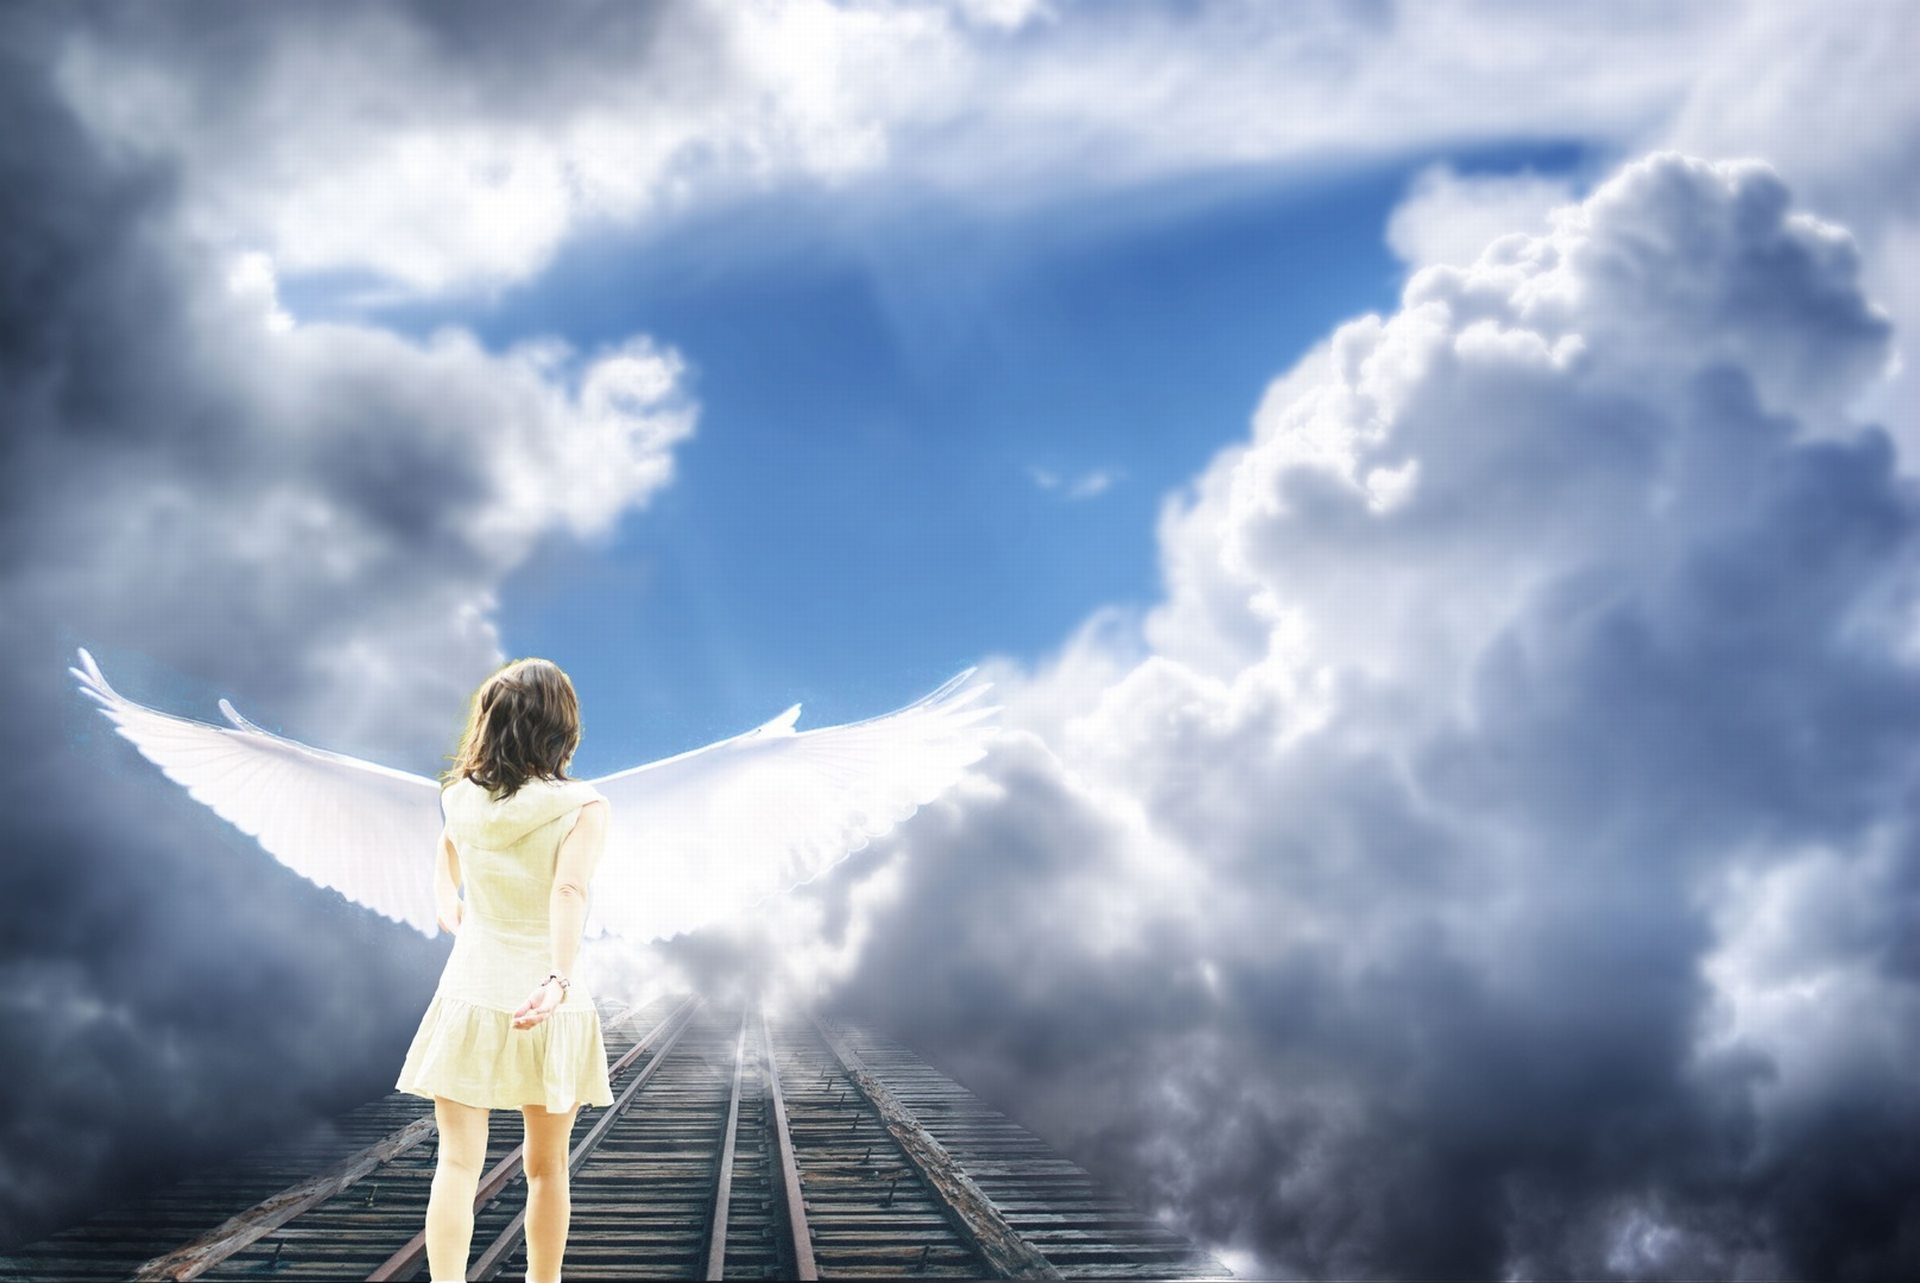 108 Cute Angel Wallpaper Free Download For Desktop - Angel Walking Into Heaven - HD Wallpaper 